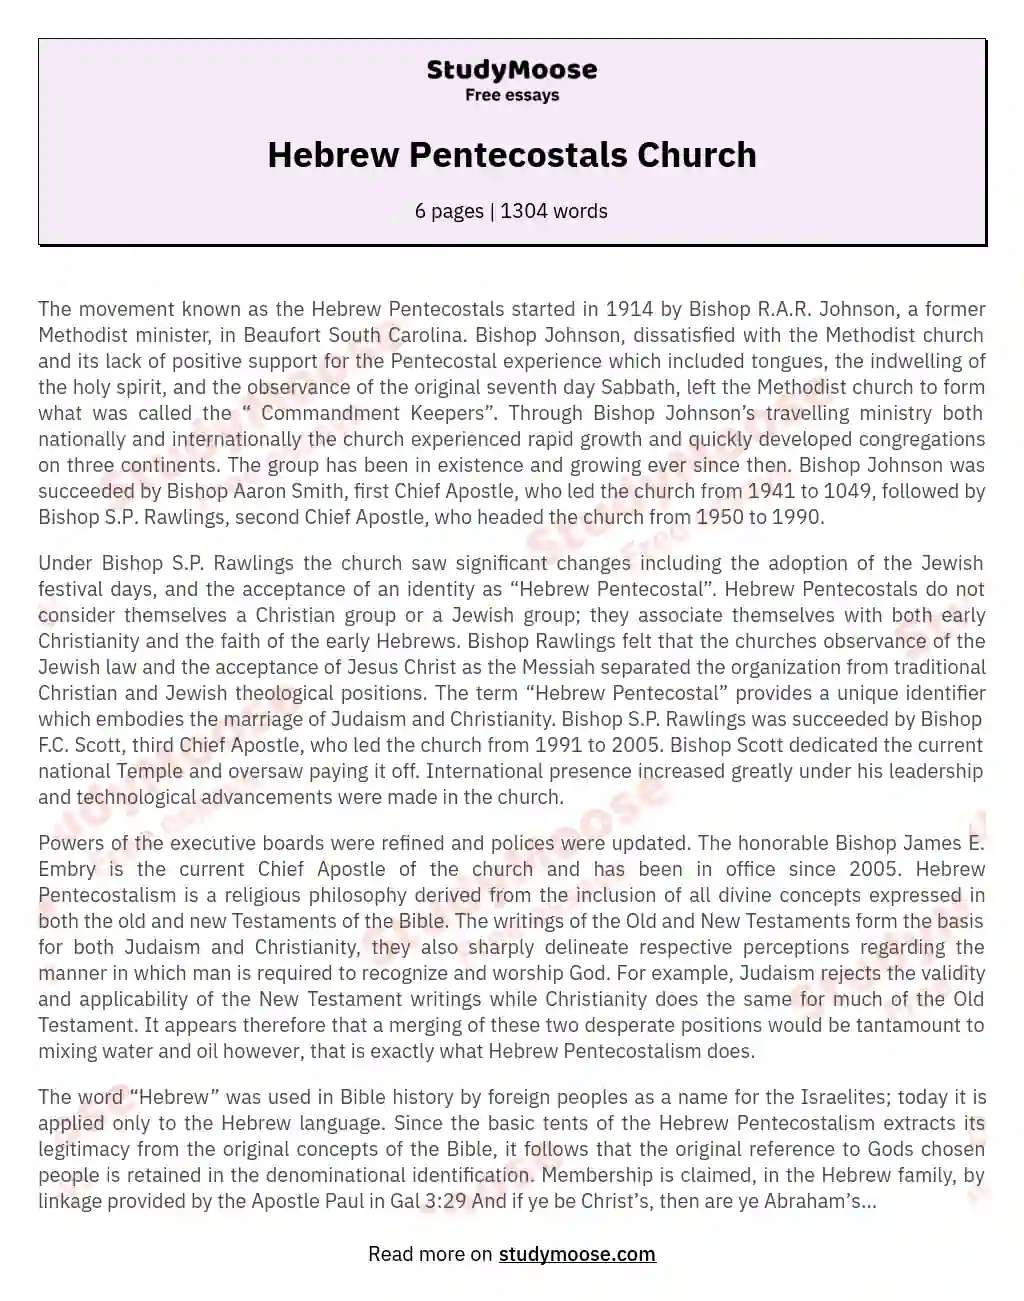 Hebrew Pentecostals Church essay